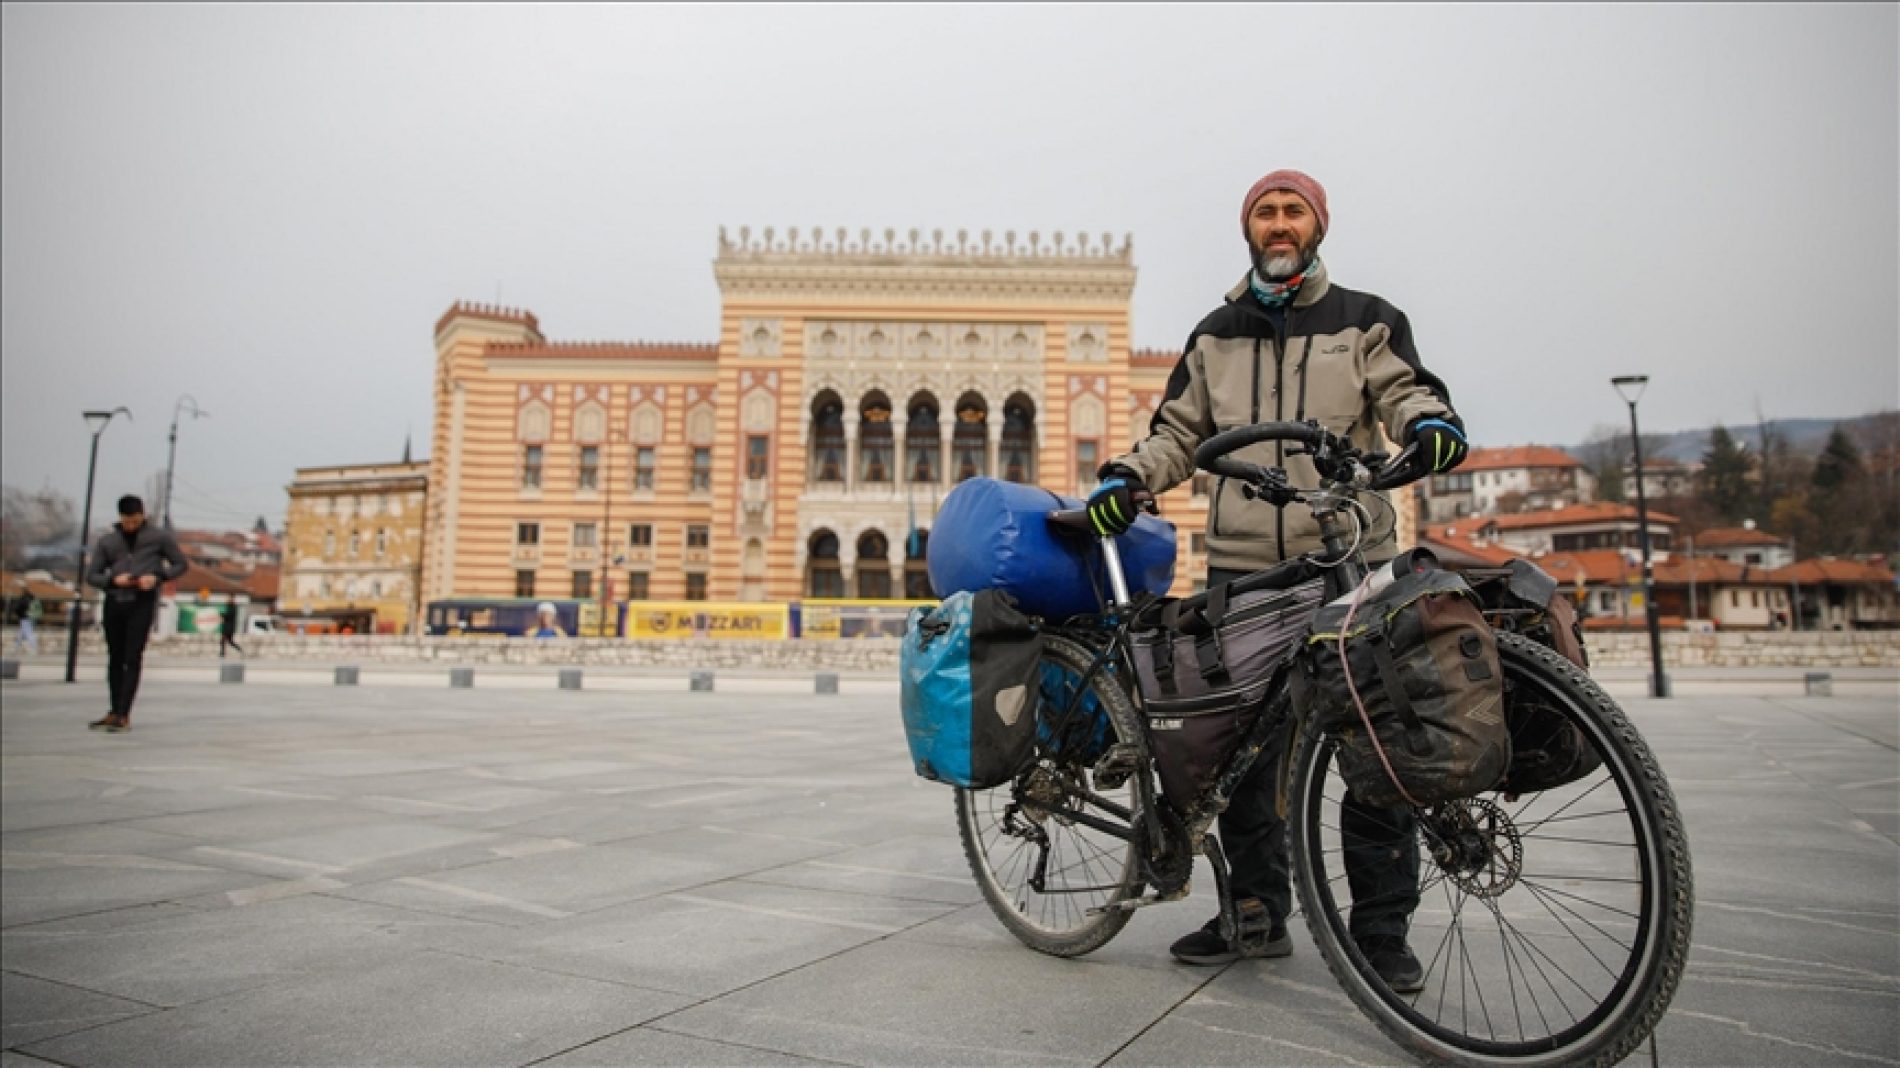 Azerbejdžanac Ramil Ziyadov biciklom na putu oko svijeta: U Bosni kao da sam rođen, zaplakao sam ugledavši Mostar